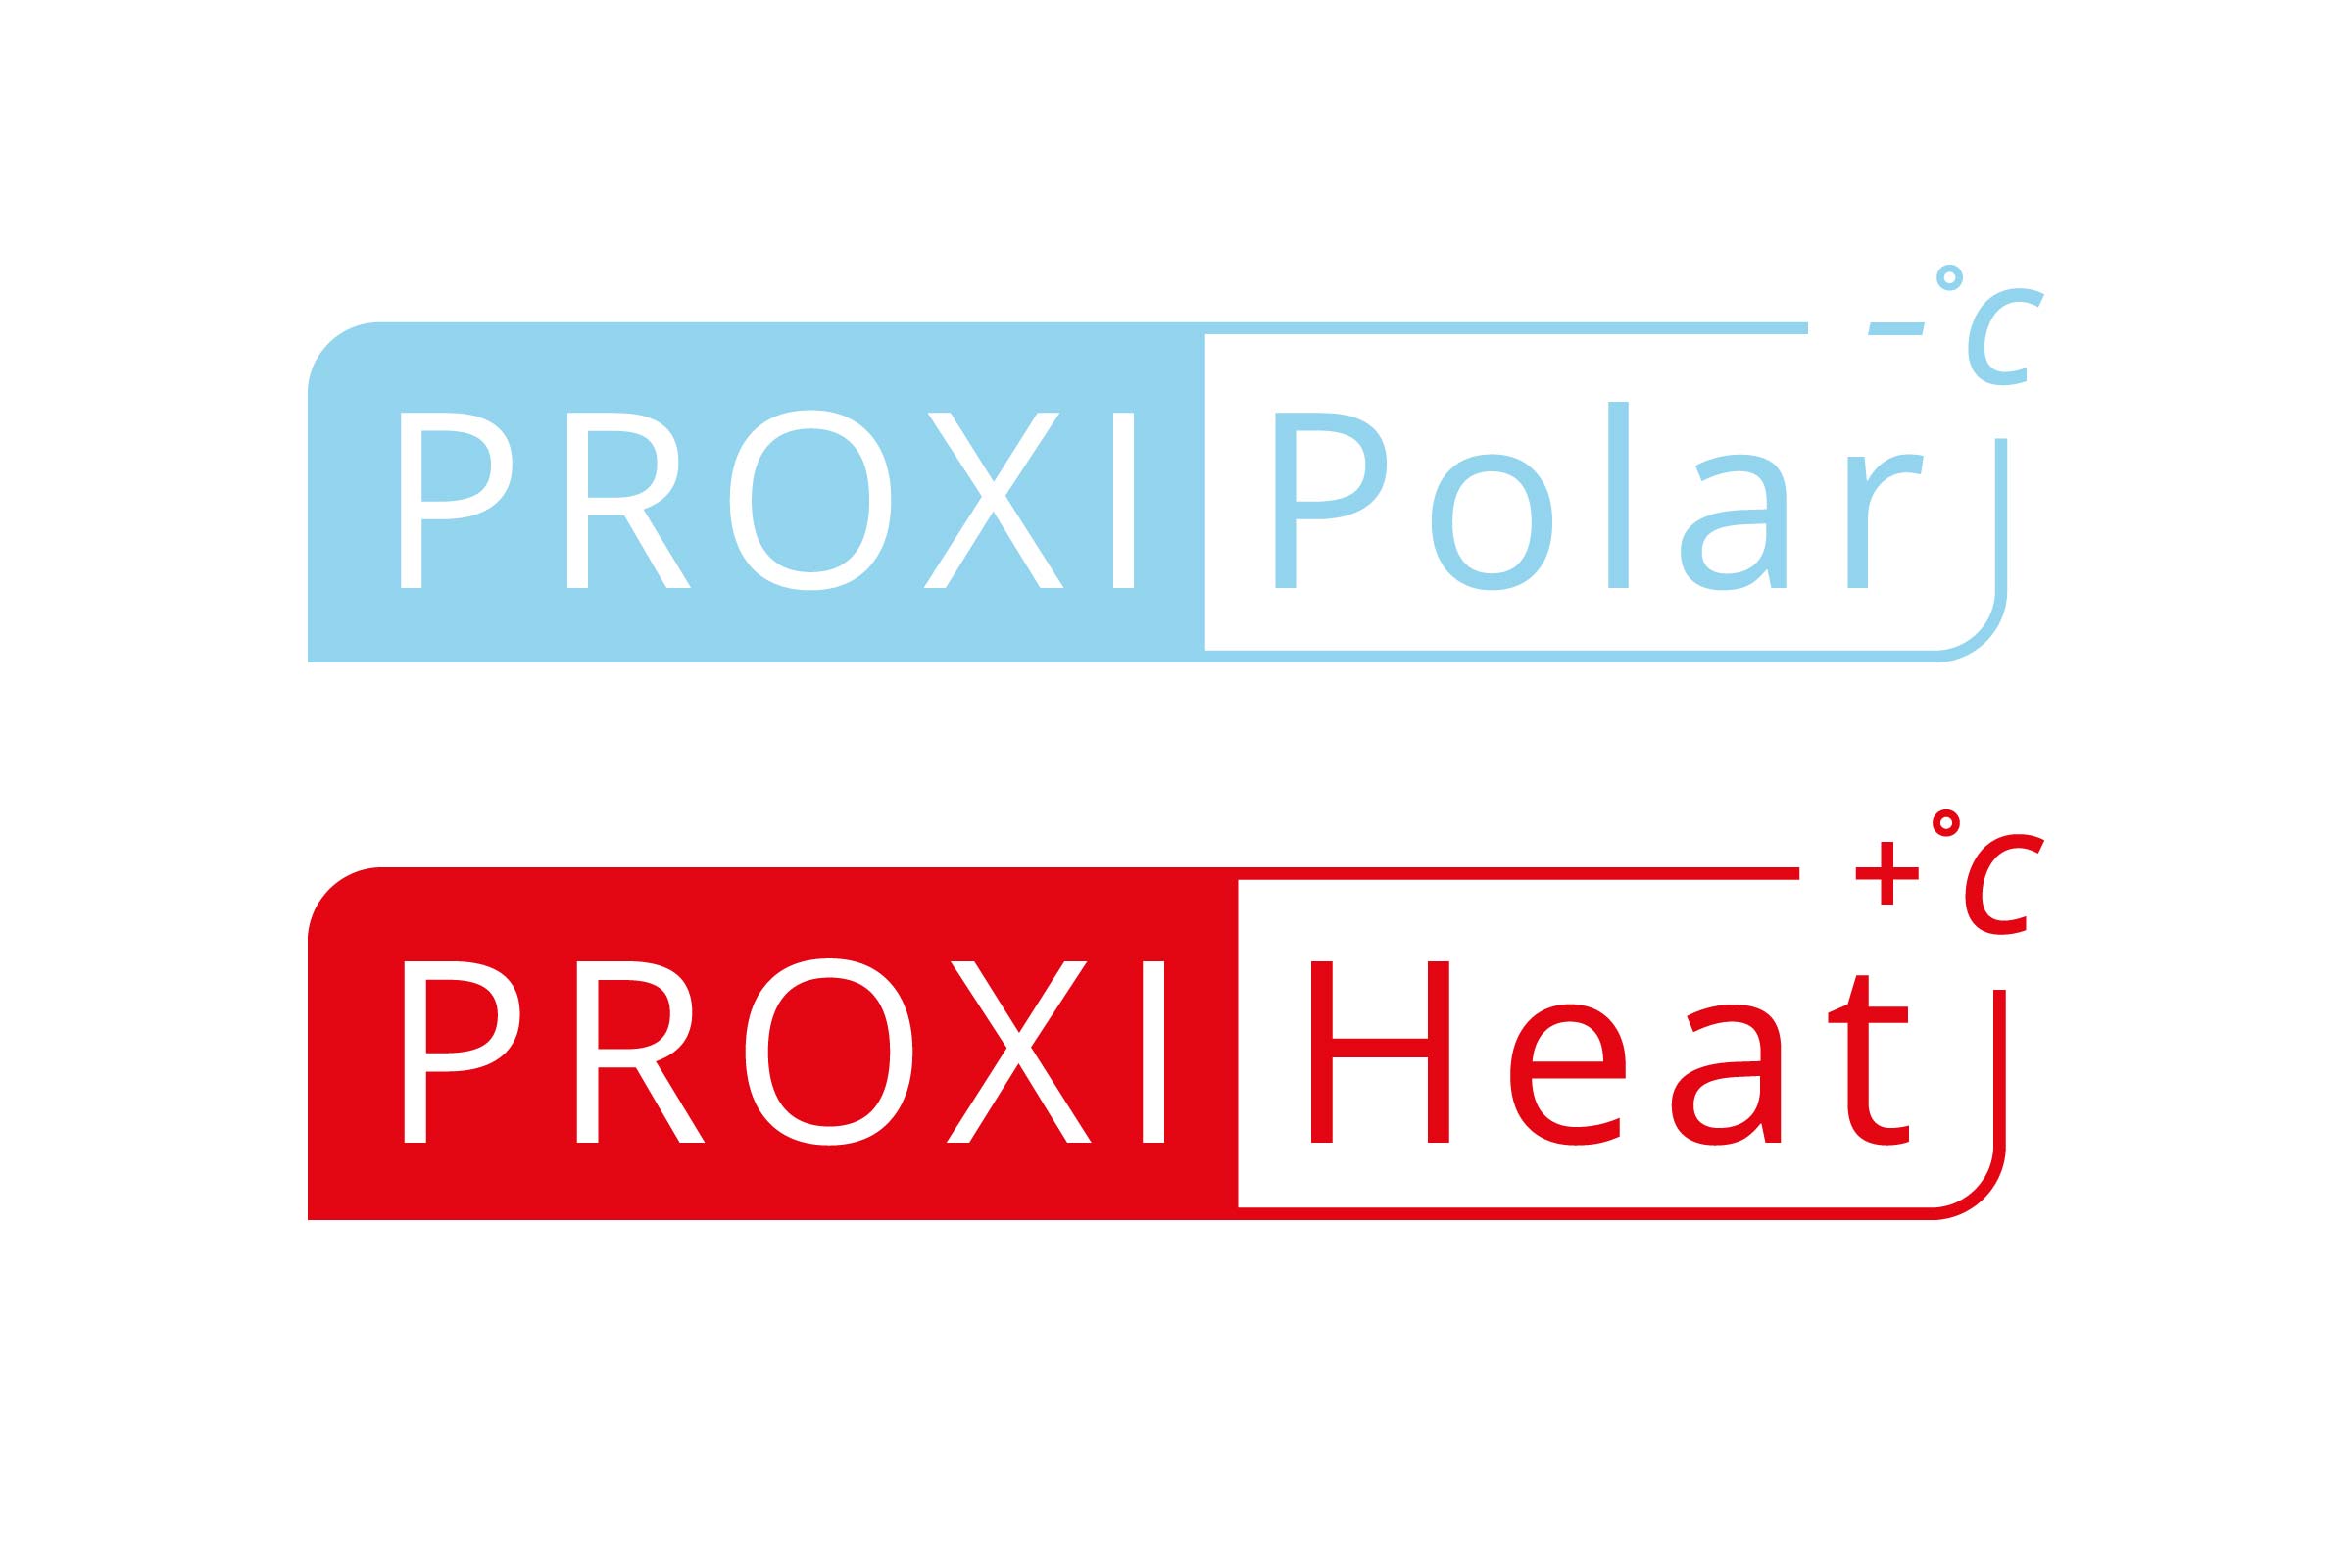 Logo ProxiPolar + ProxiHeat ür Proxitron aus Elmshorn